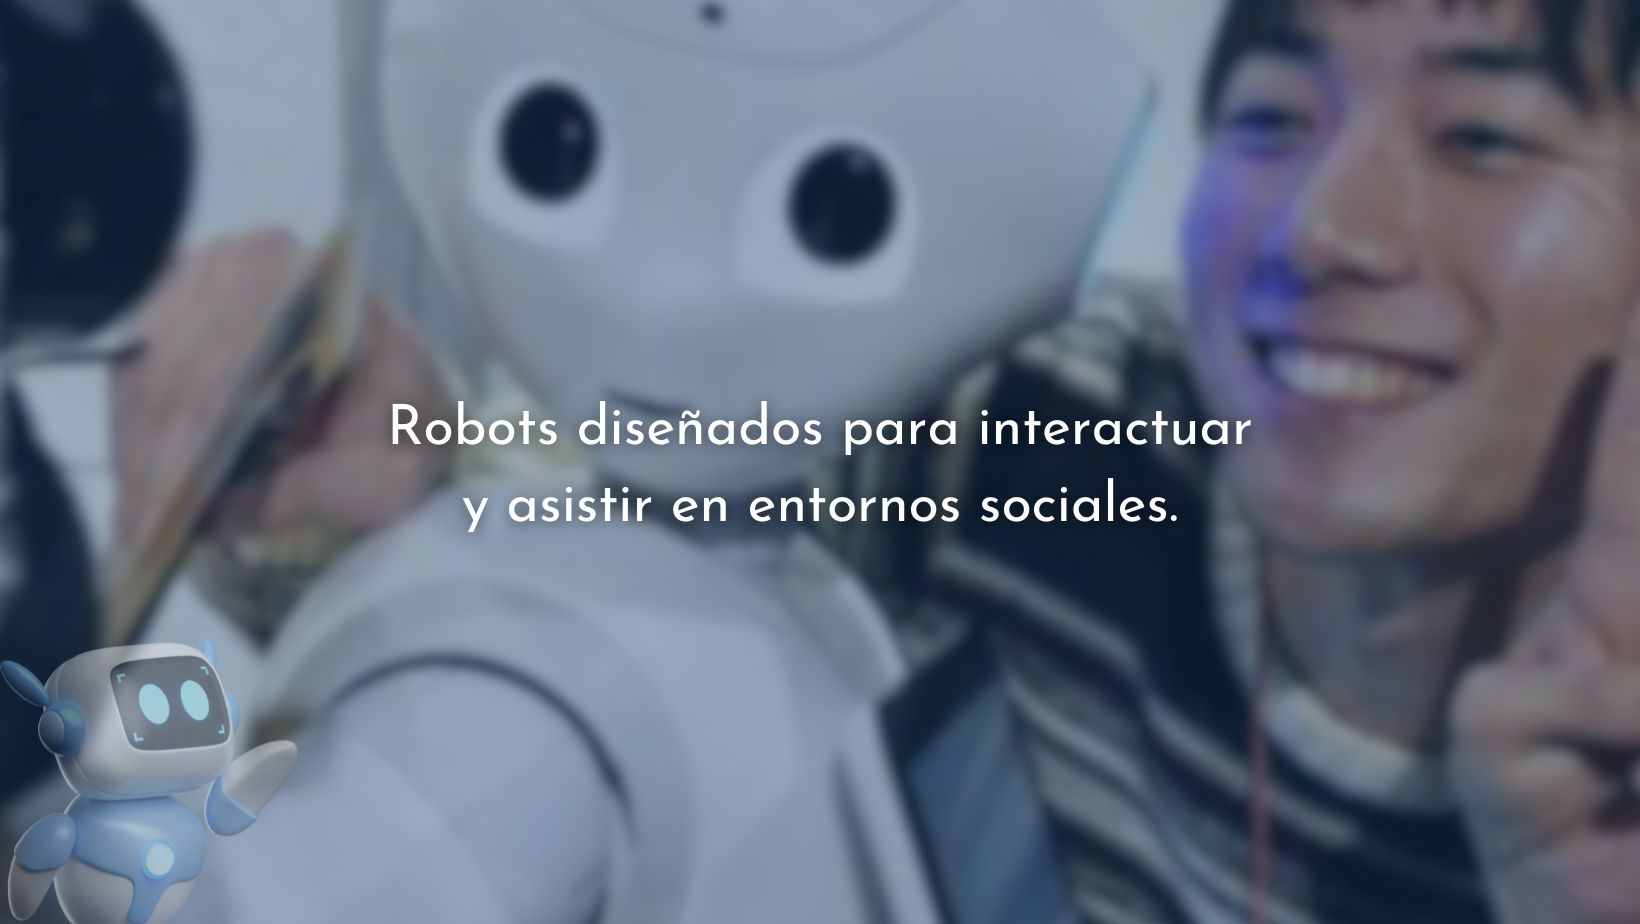 Robots diseñados para interactuar y asistir en entornos sociales.